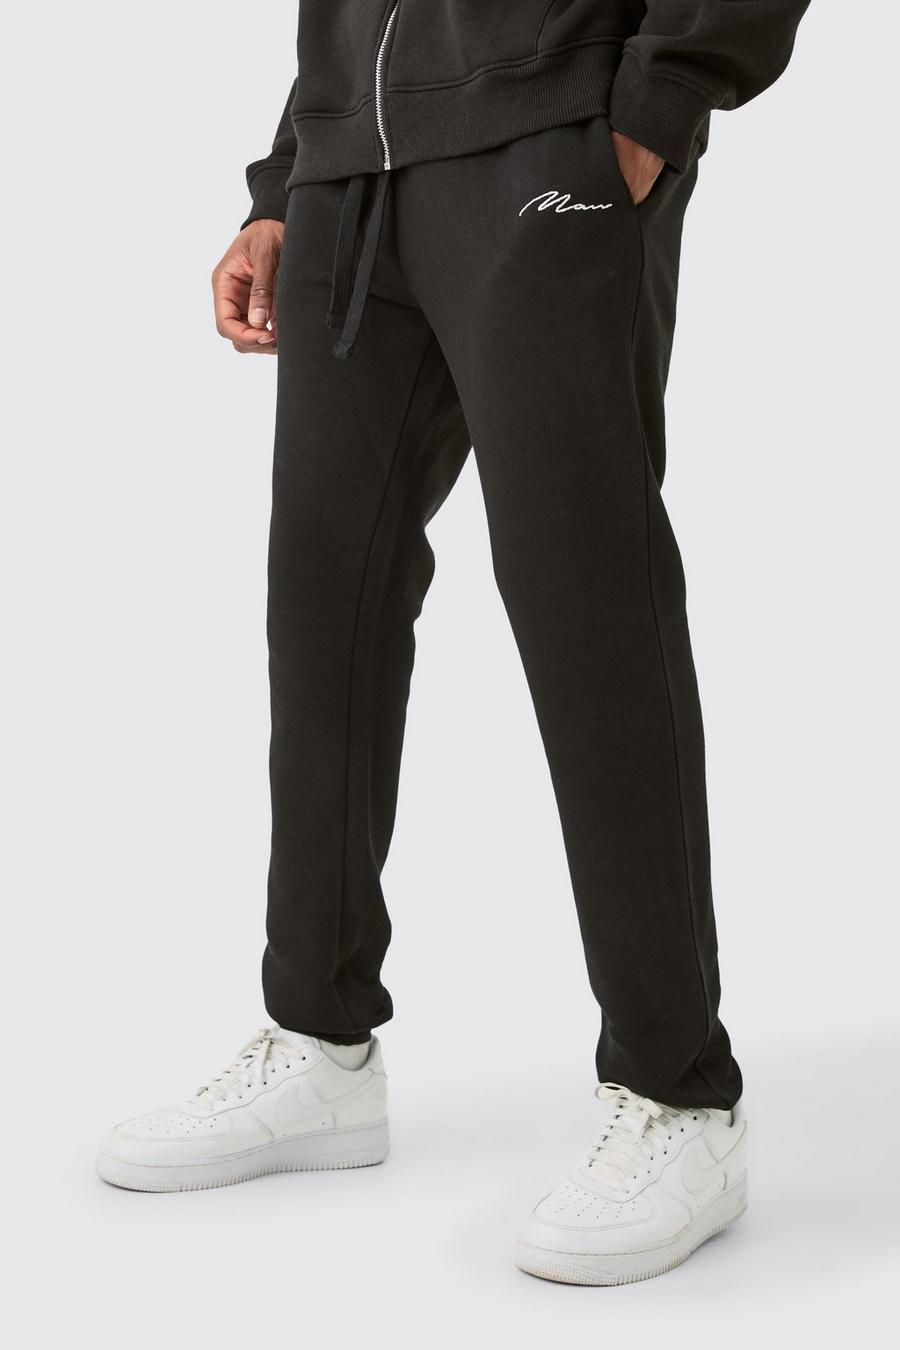 Pantalón deportivo Tall pitillo negro con firma MAN, Black